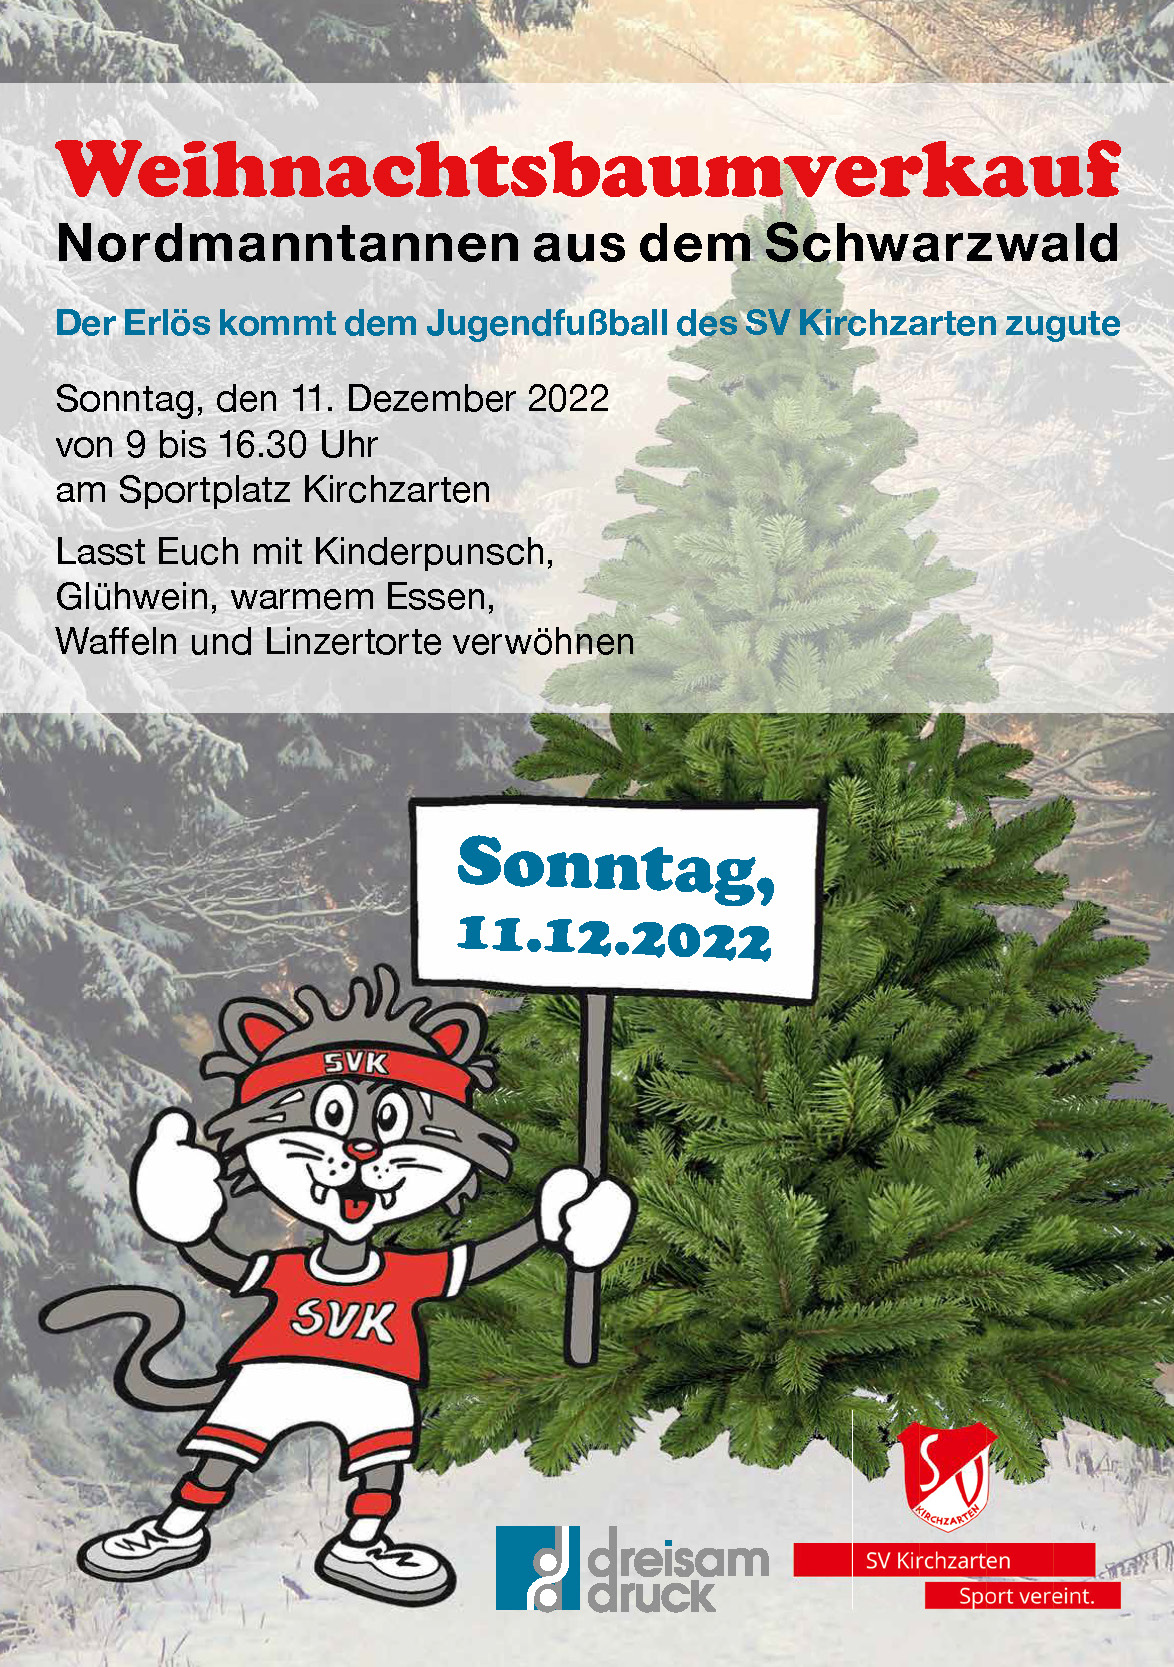 Weihnachtsbaumverkauf am 11.12.2022